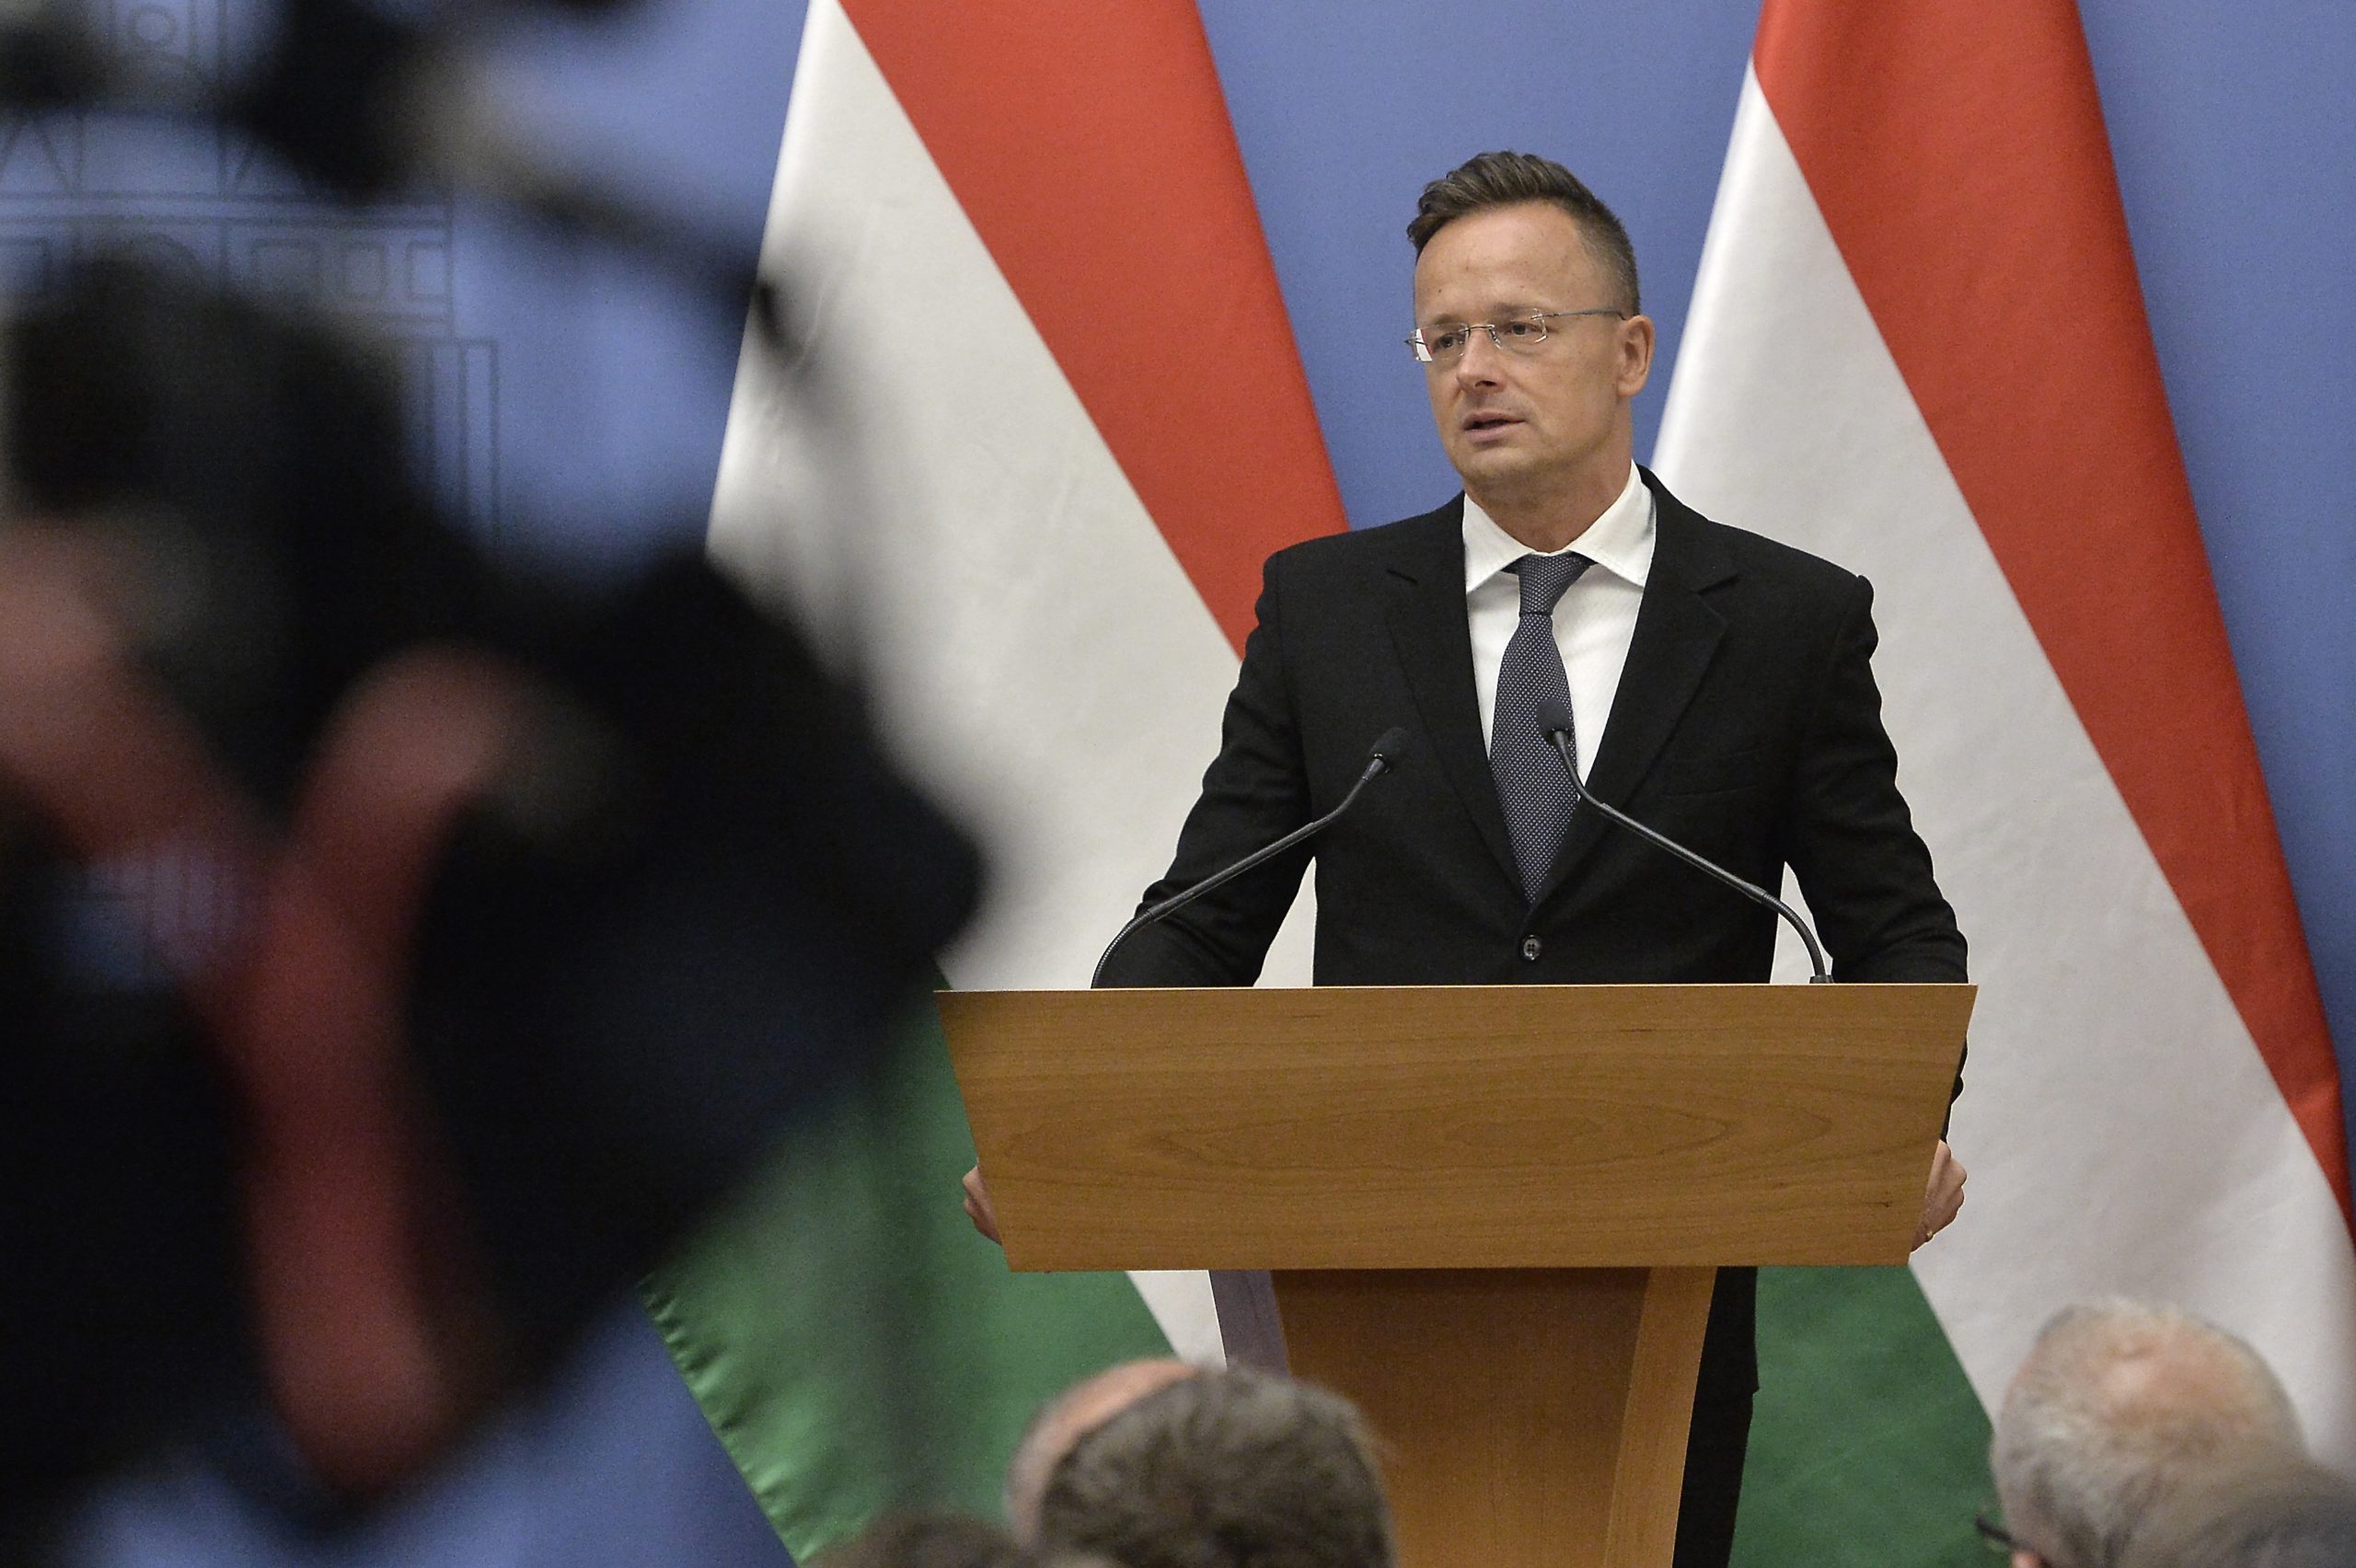 FM Szijjártó Warns of ‘Vicious Circle’ of Pandemic, Migration - Hungary Today